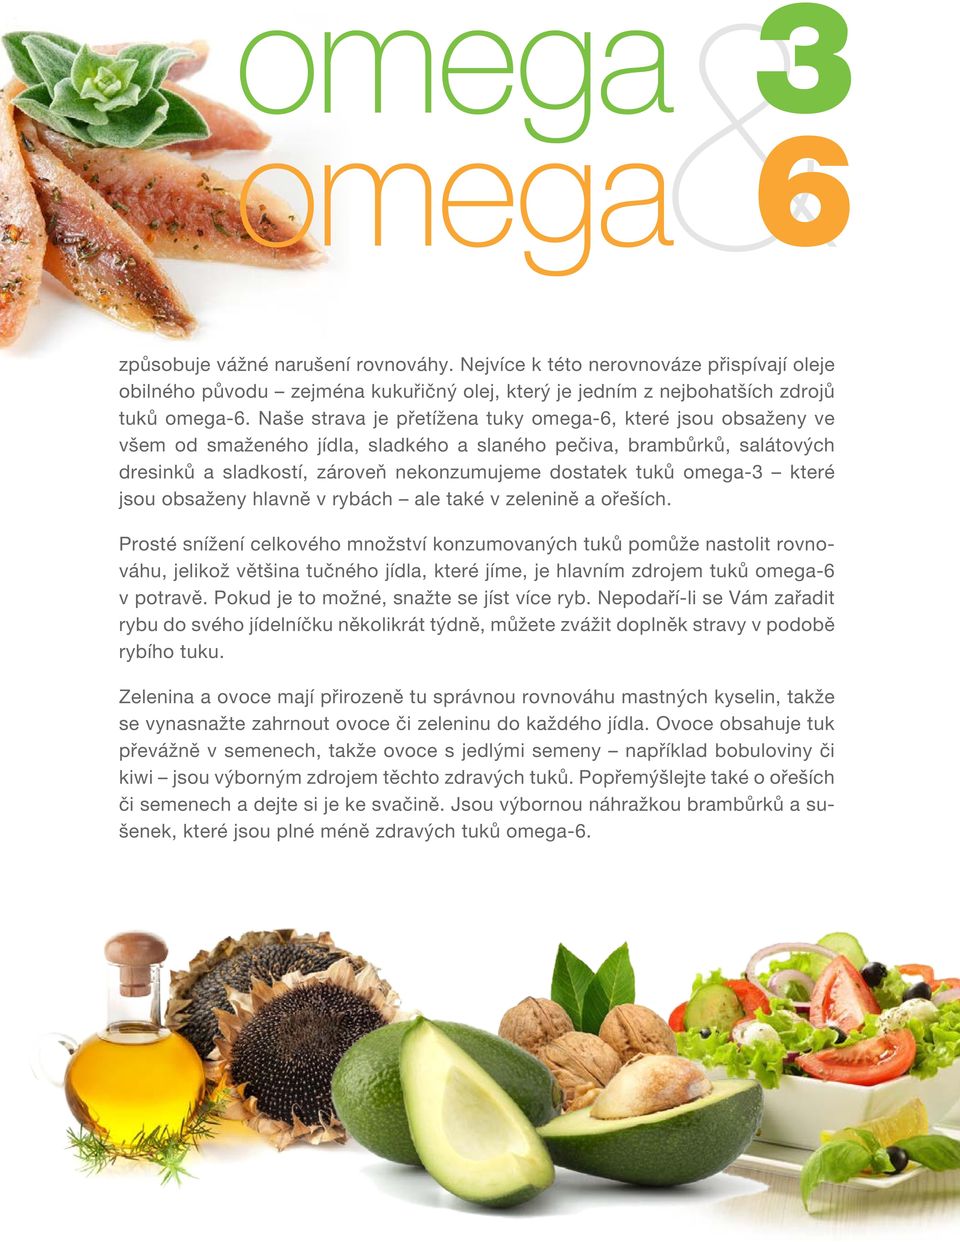 omega-3 které jsou obsaženy hlavně v rybách ale také v zelenině a ořeších.